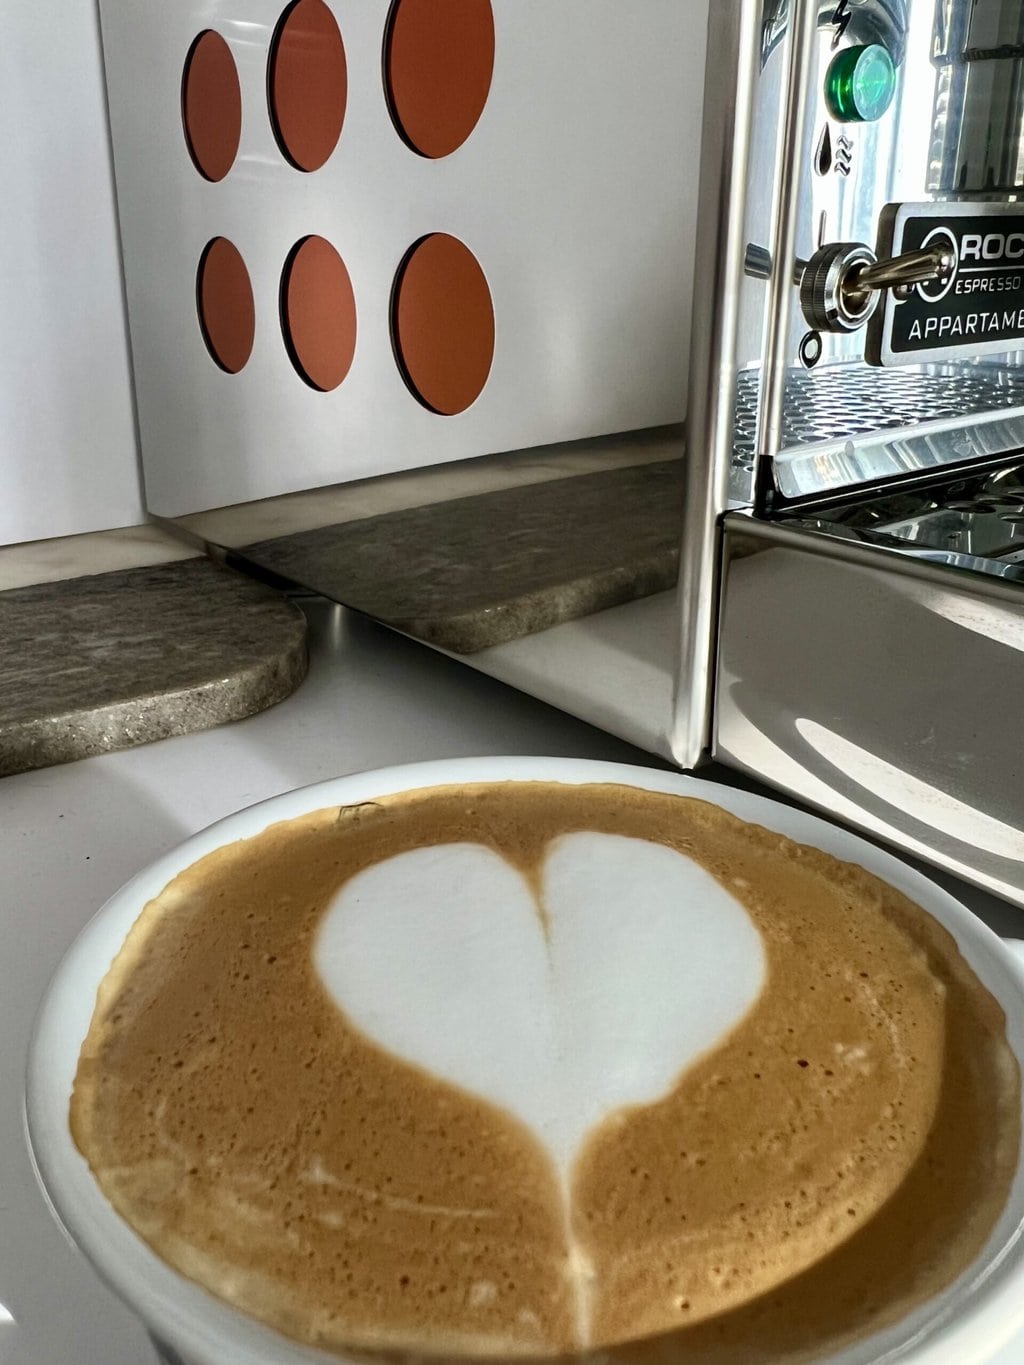 一杯咖啡心泡沫后台Rocket EspressoAppatamento咖啡机